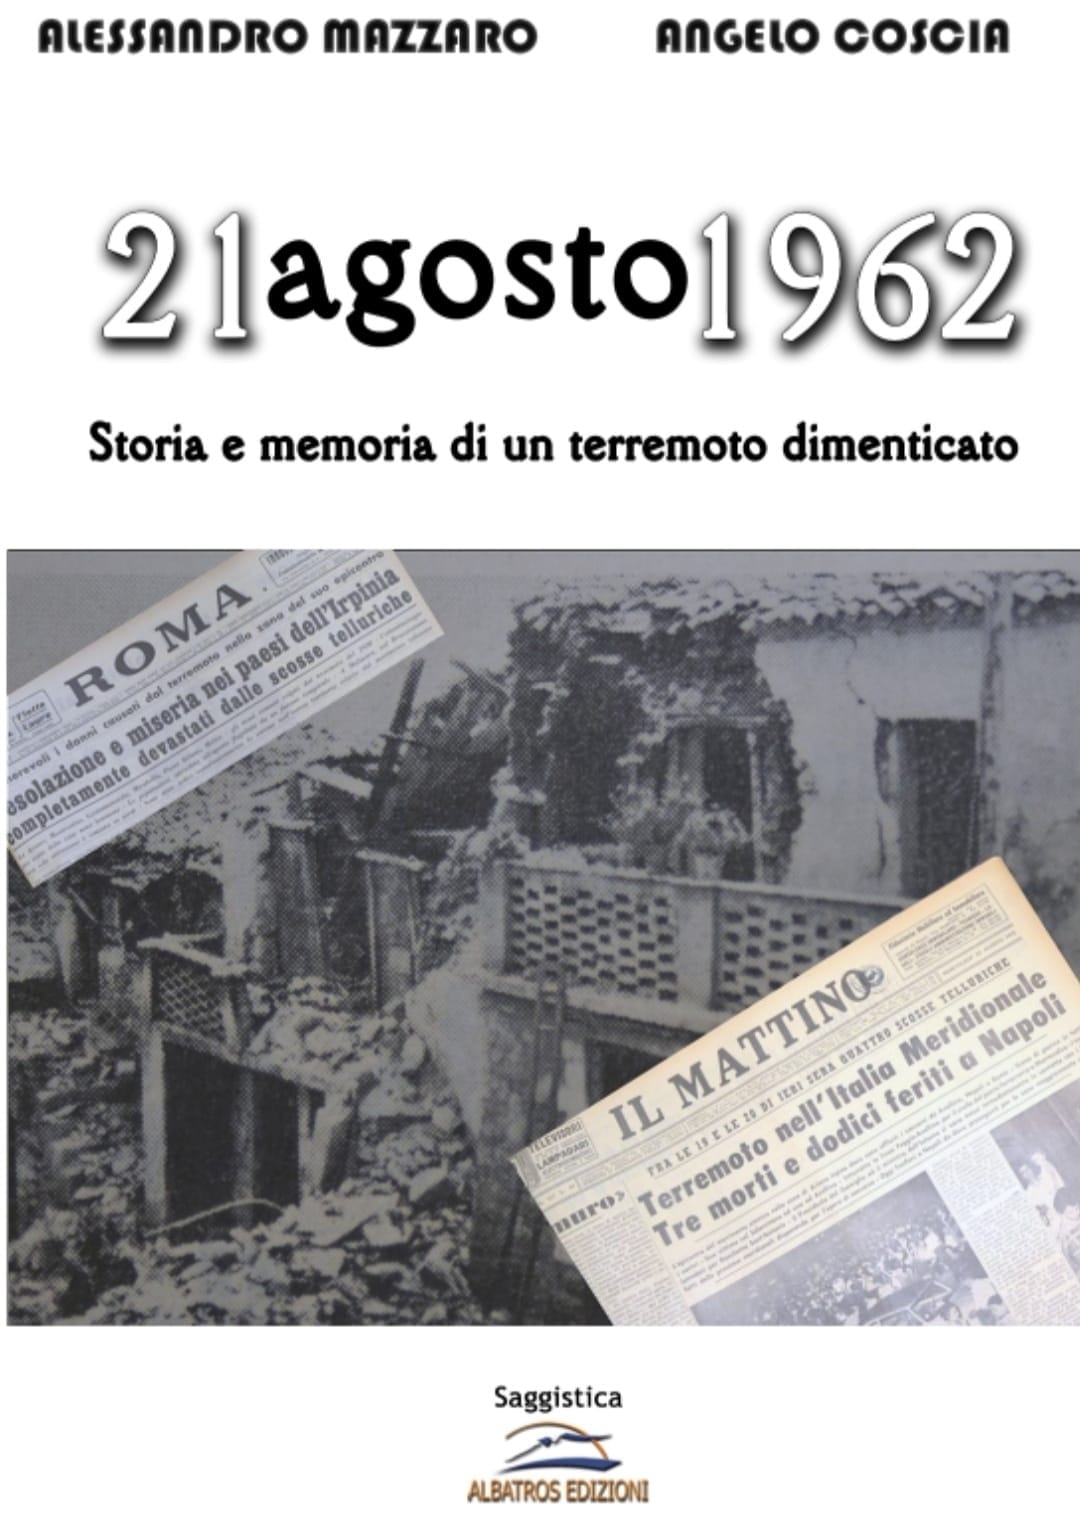 “21 agosto 1962”: il libro che racconta la storia di un terremoto dimenticato